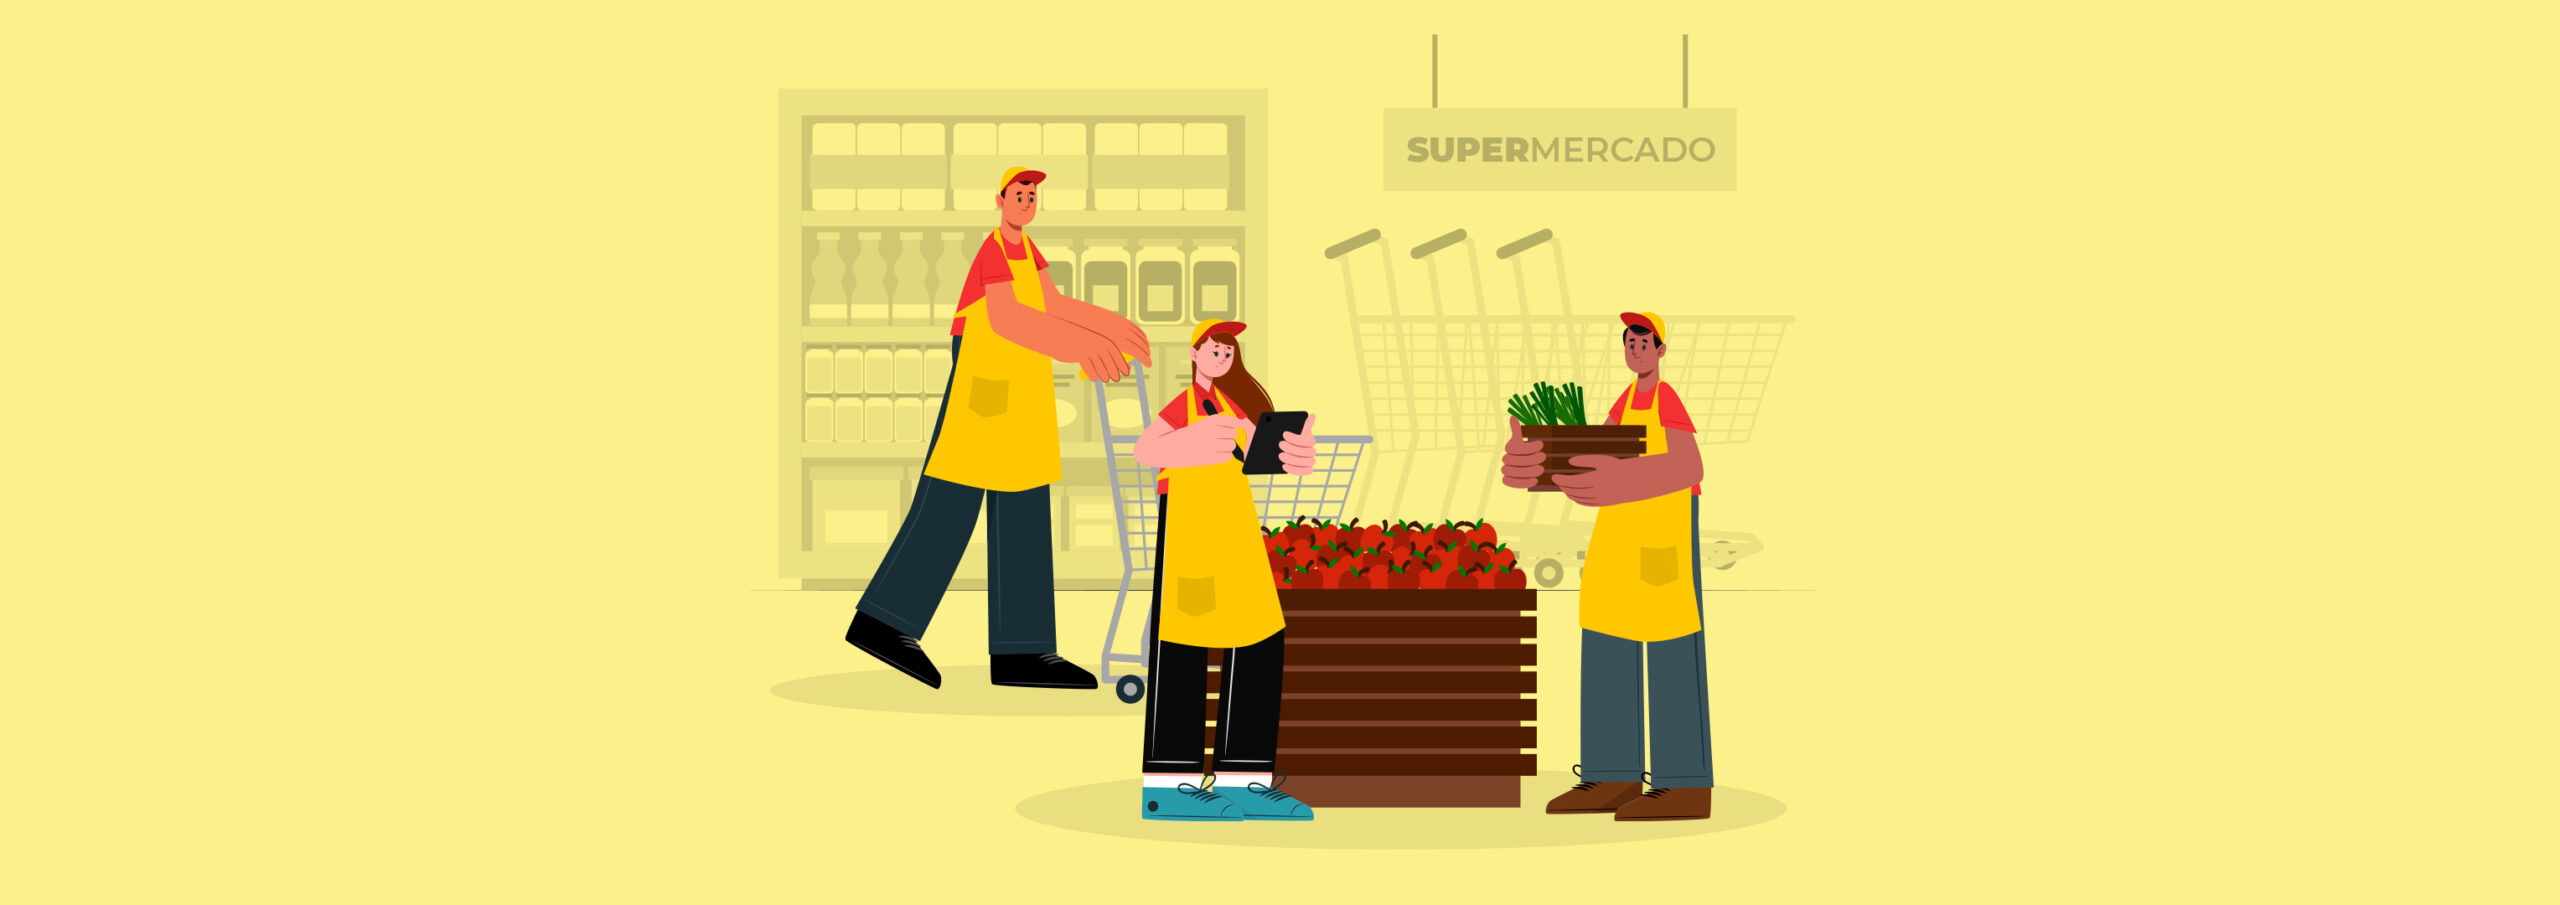 Você está visualizando atualmente 11 dicas de prevenção de perdas em supermercados